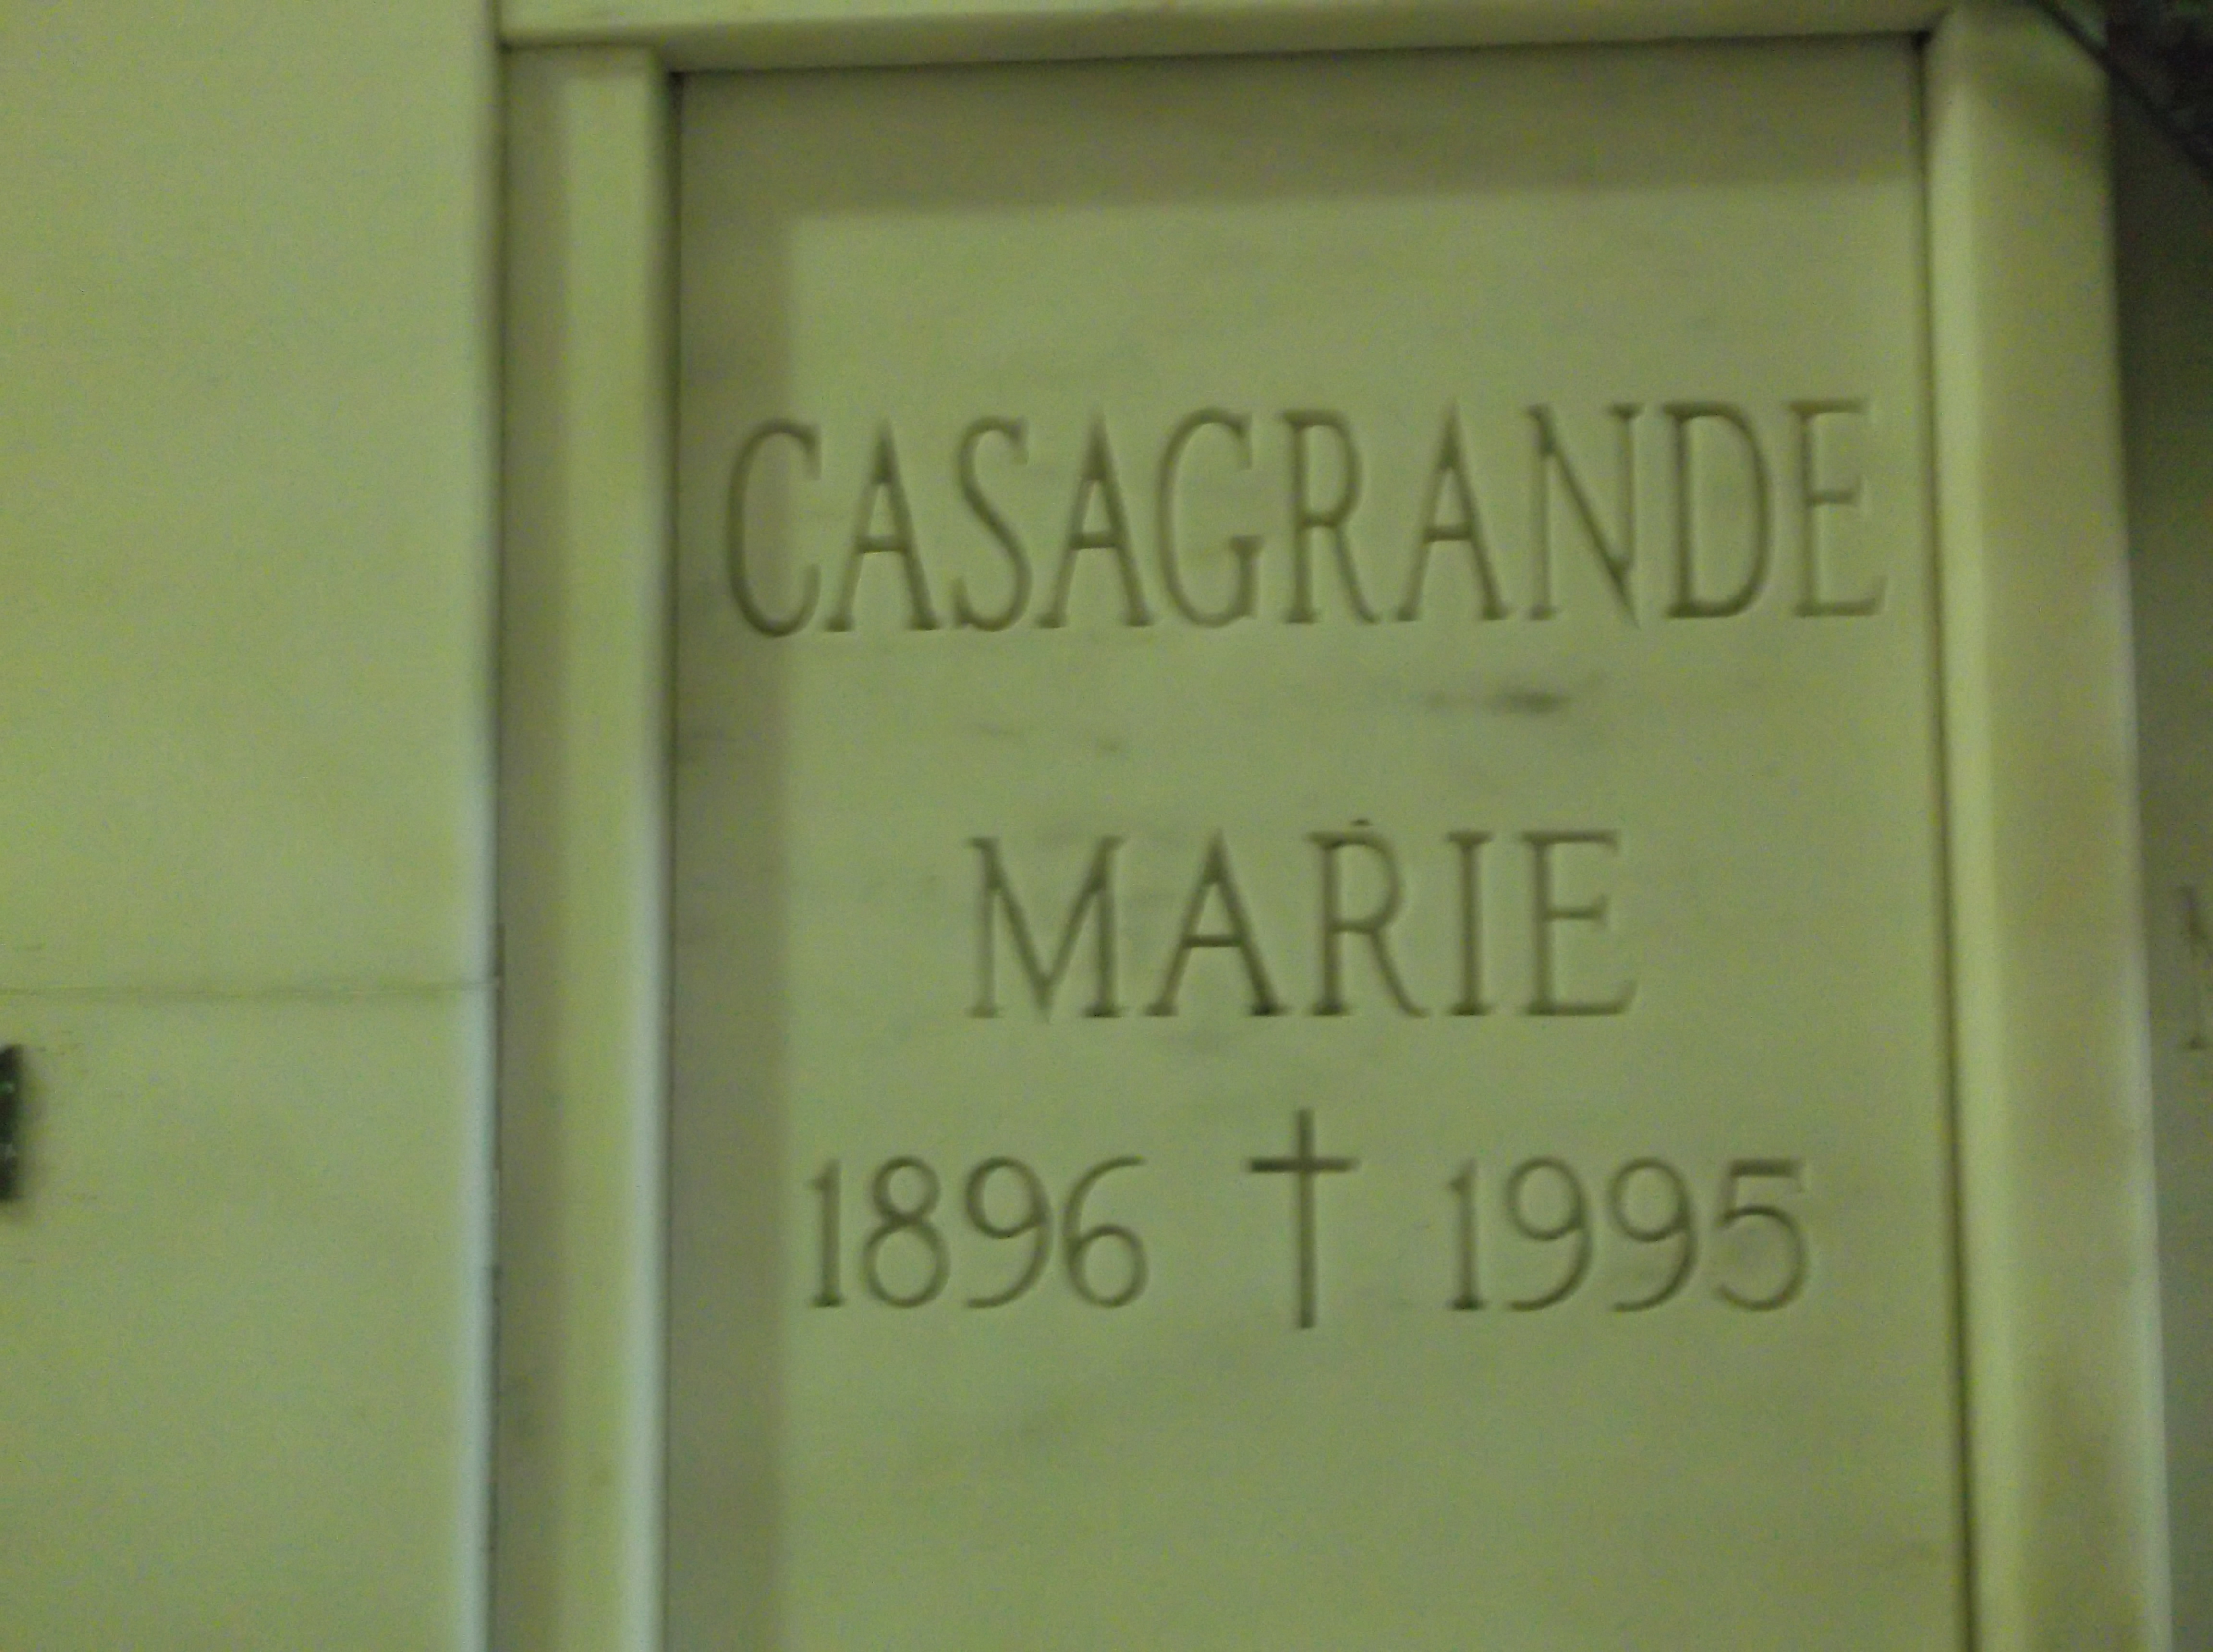 Marie Casagrande